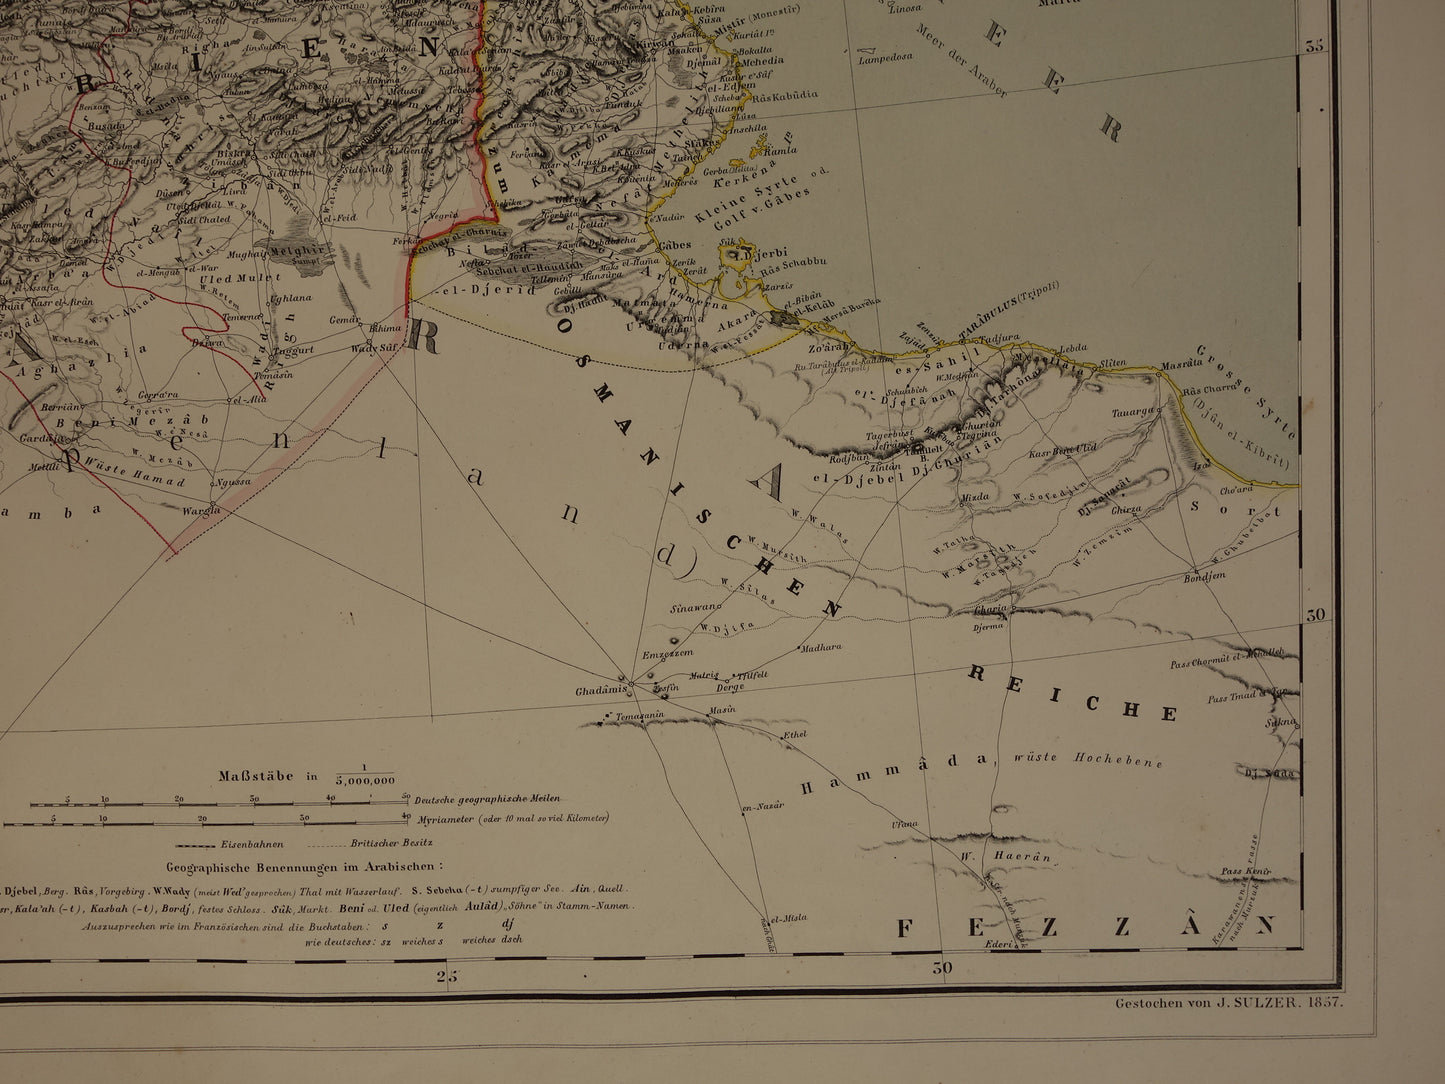 Oude kaart van westelijk Middellandse Zeegebied originele antieke landkaart van Marokko Tunesië Algerije Spanje Corisca met jaartal grote historische kaarten